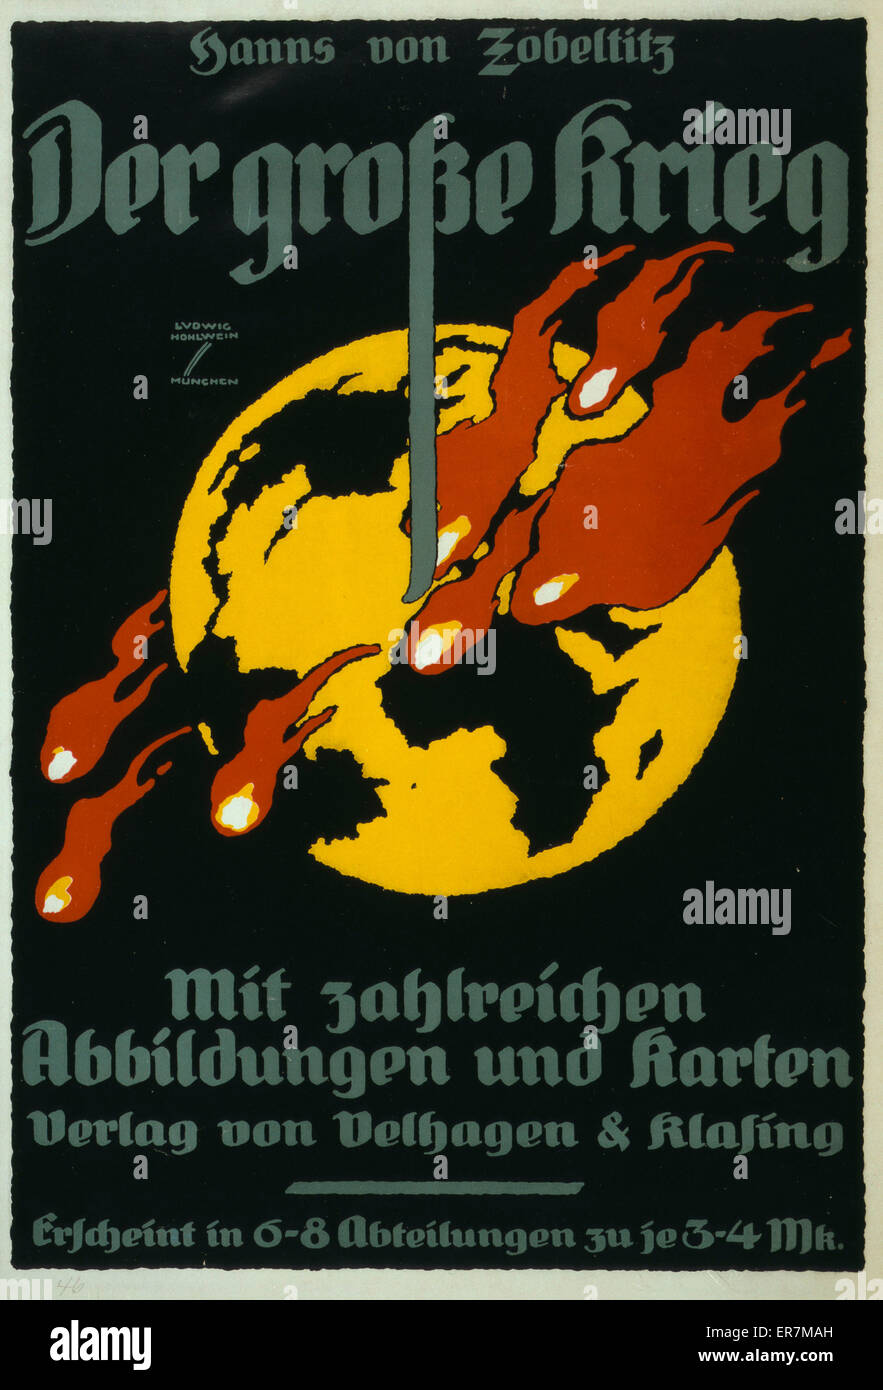 Der Grosse Krieg, von Hanns von Zobeltitz, mit zahlreichen Abbildungen und Karten cartel muestra una vista de la tierra con las llamas en el hemisferio oriental. Póster es un anuncio de la Gran Guerra por Hanns von Zobeltitz, un libro con mapas y fotografías. Fecha Foto de stock